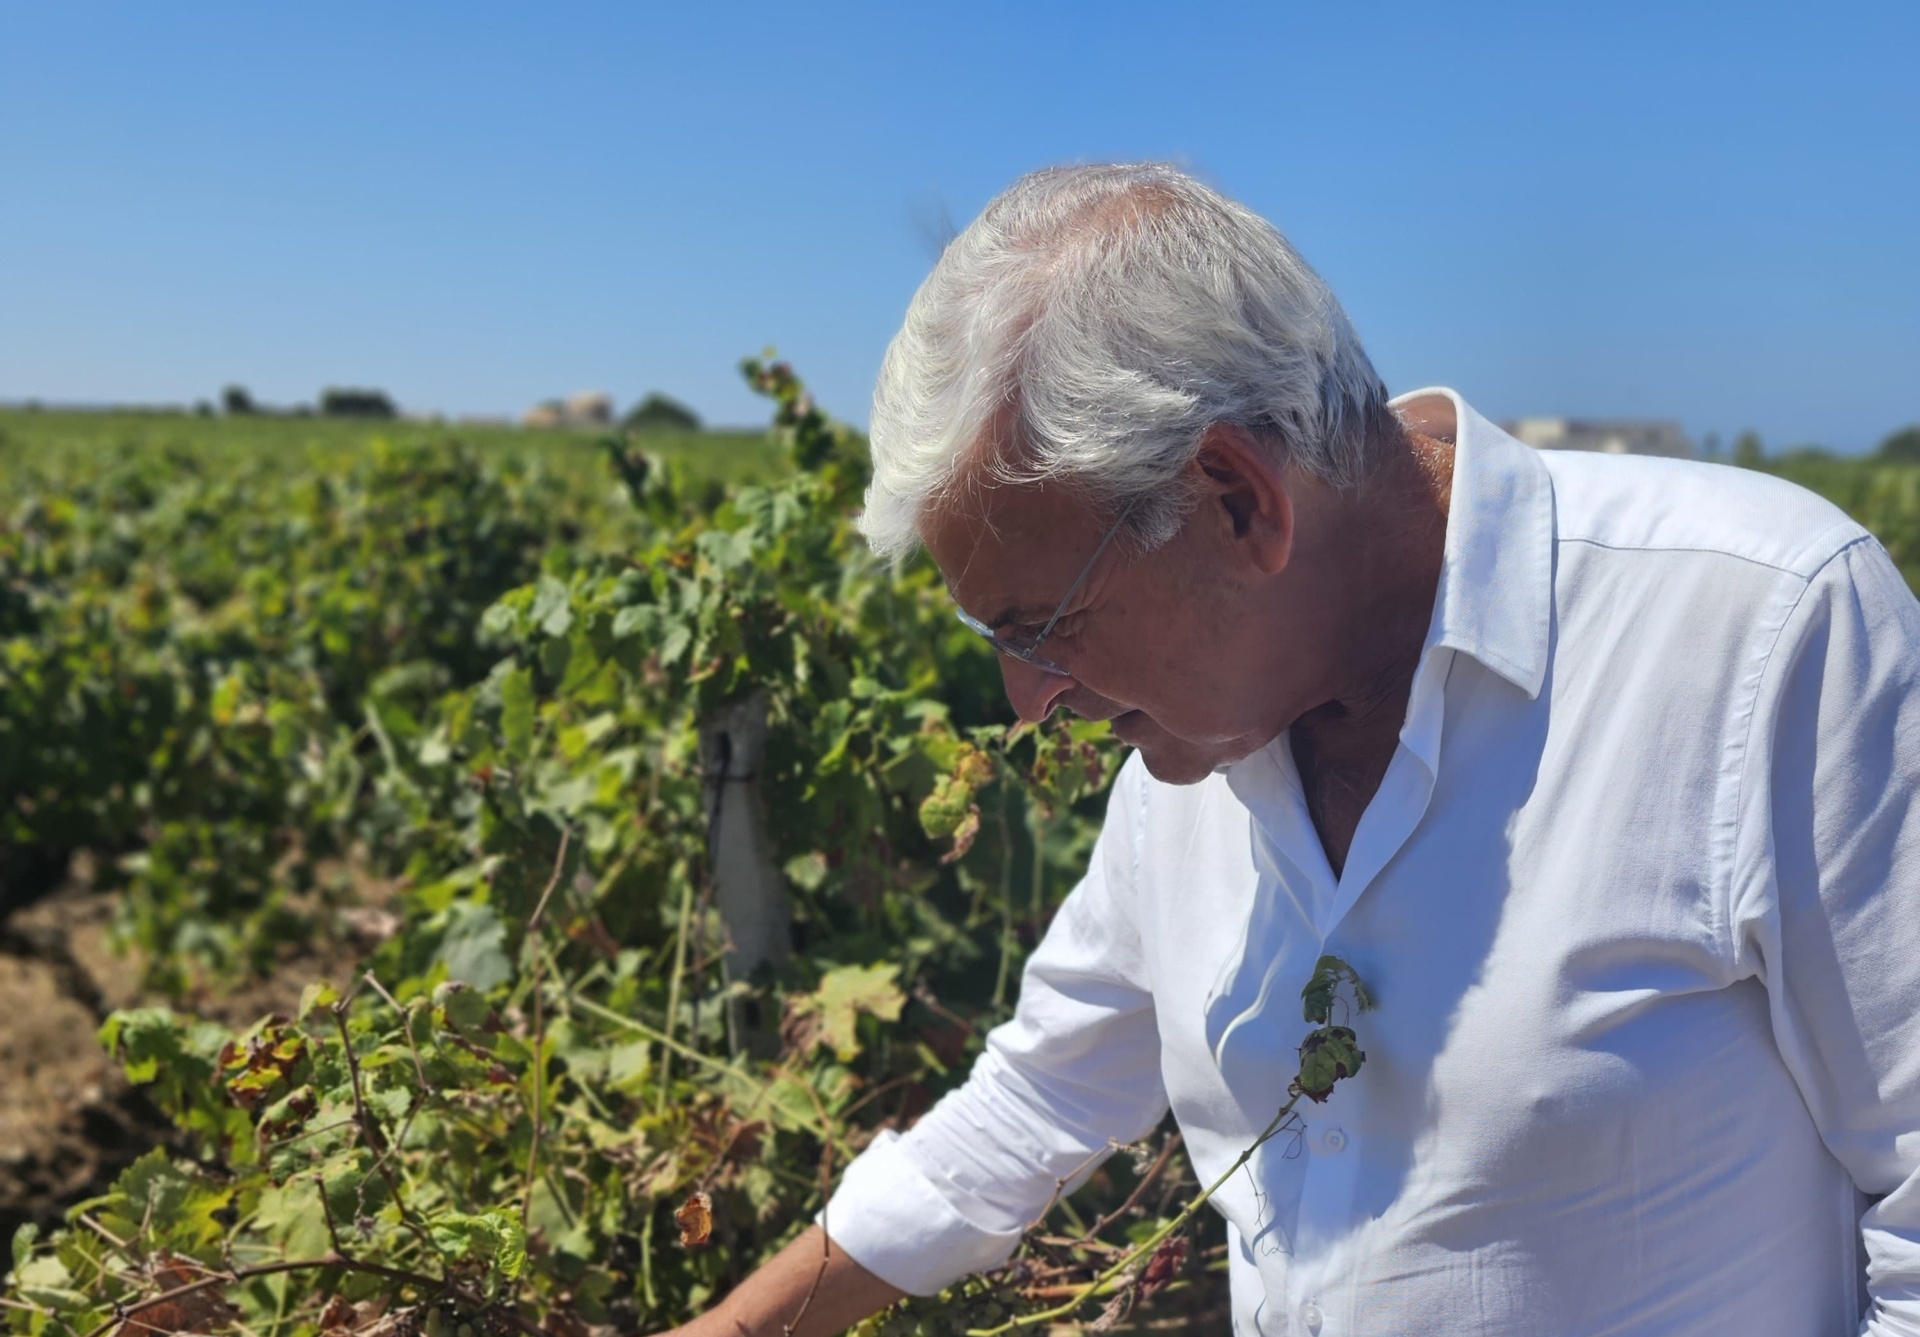 Agricoltura, UniCredit rinvia pagamenti in Sicilia. Pellegrino (FI): “Recepite aspettative imprenditori”